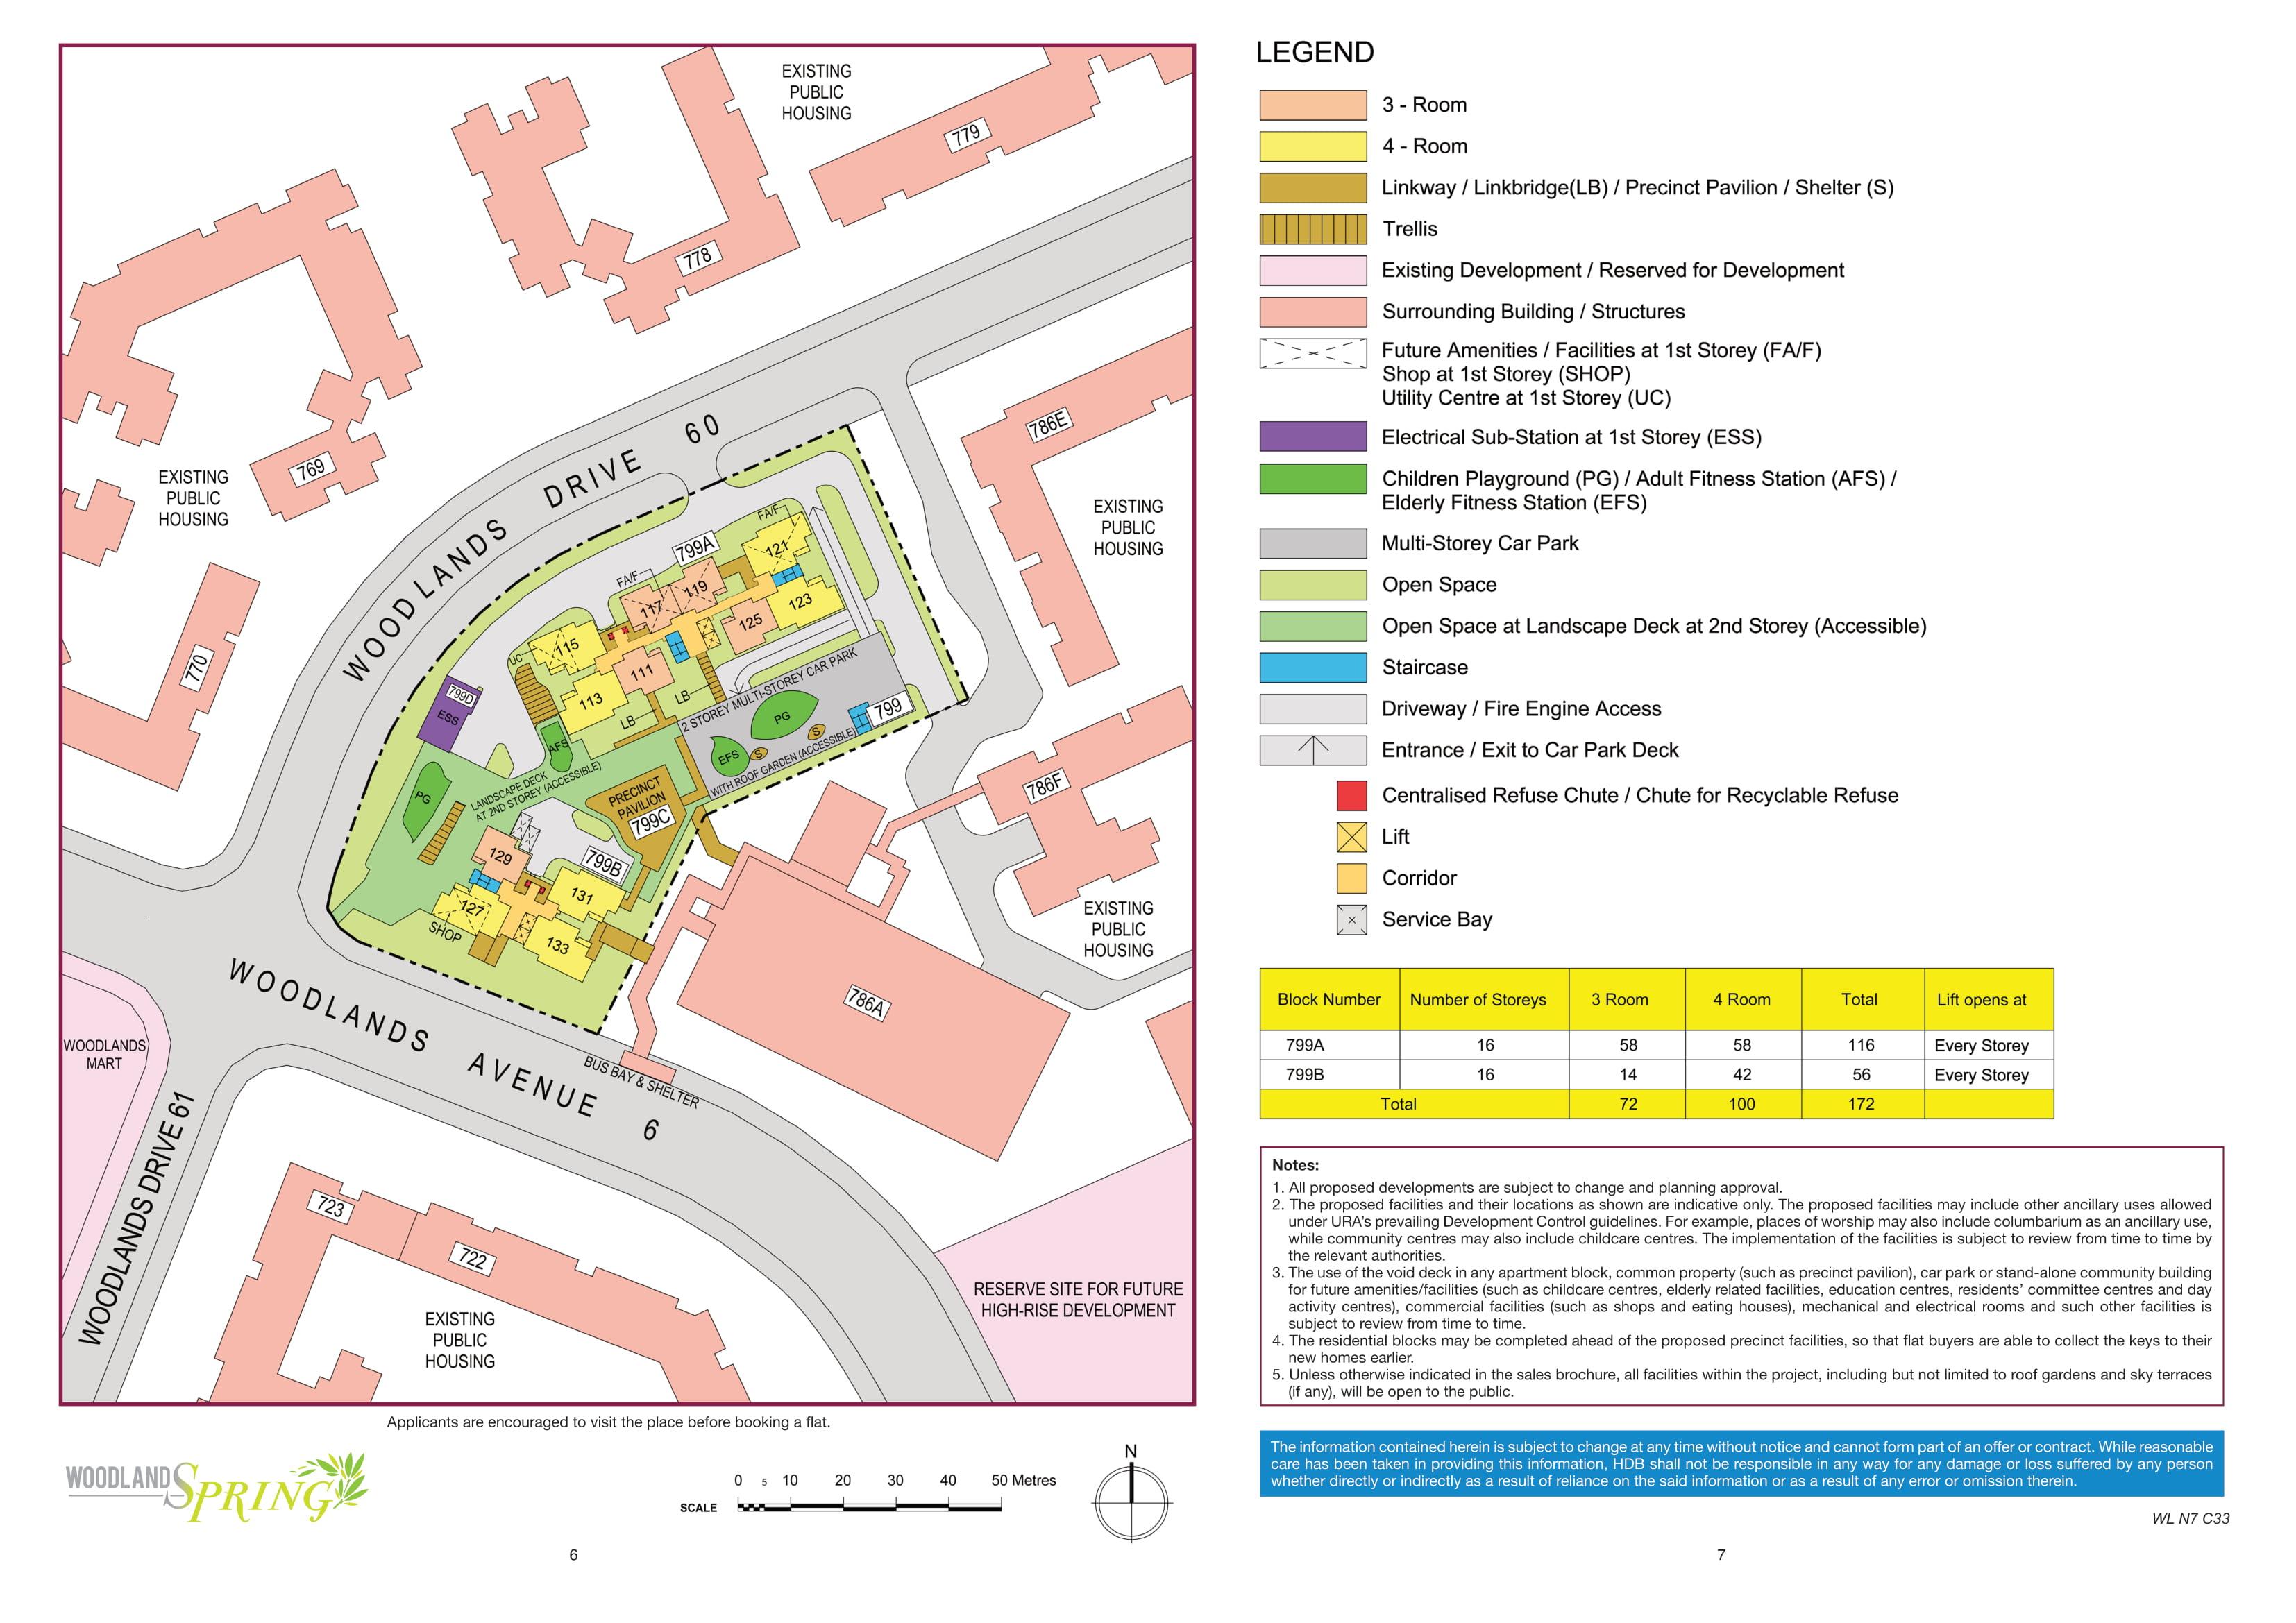 Woodlands Spring Site Plan